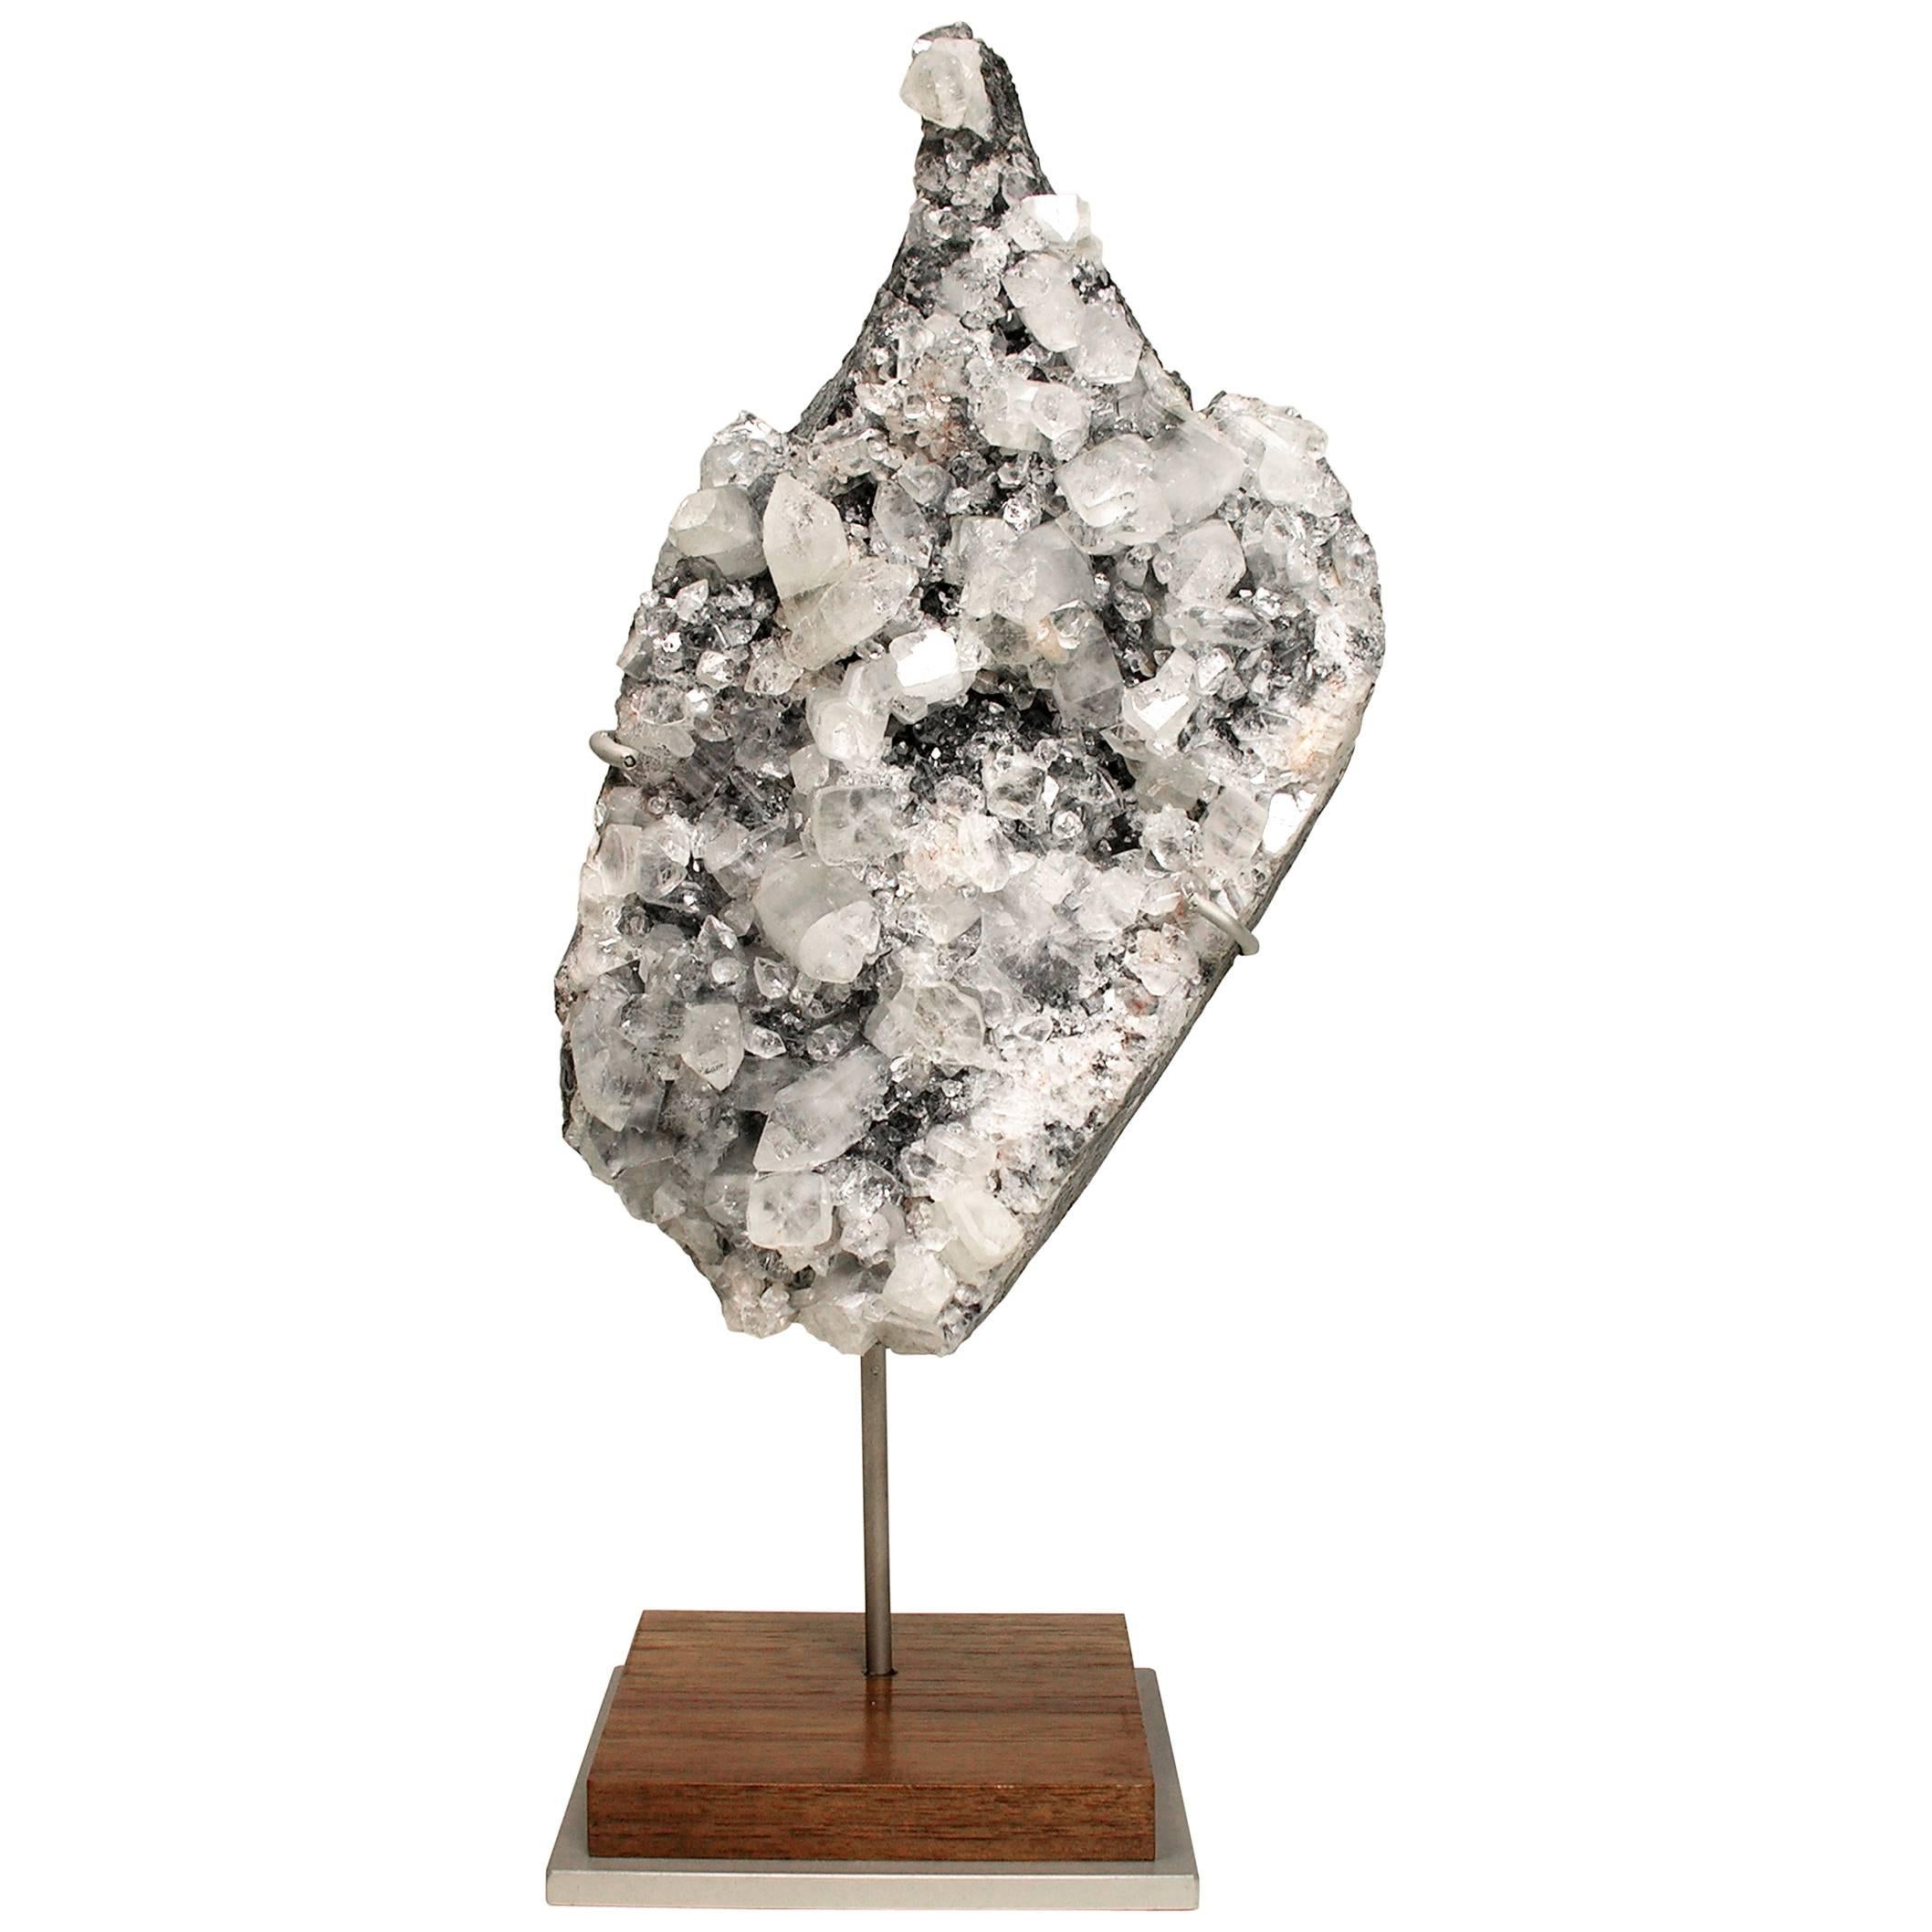 Mineral Specimen Sculpture Apophyllite Grown on a Crystal Base